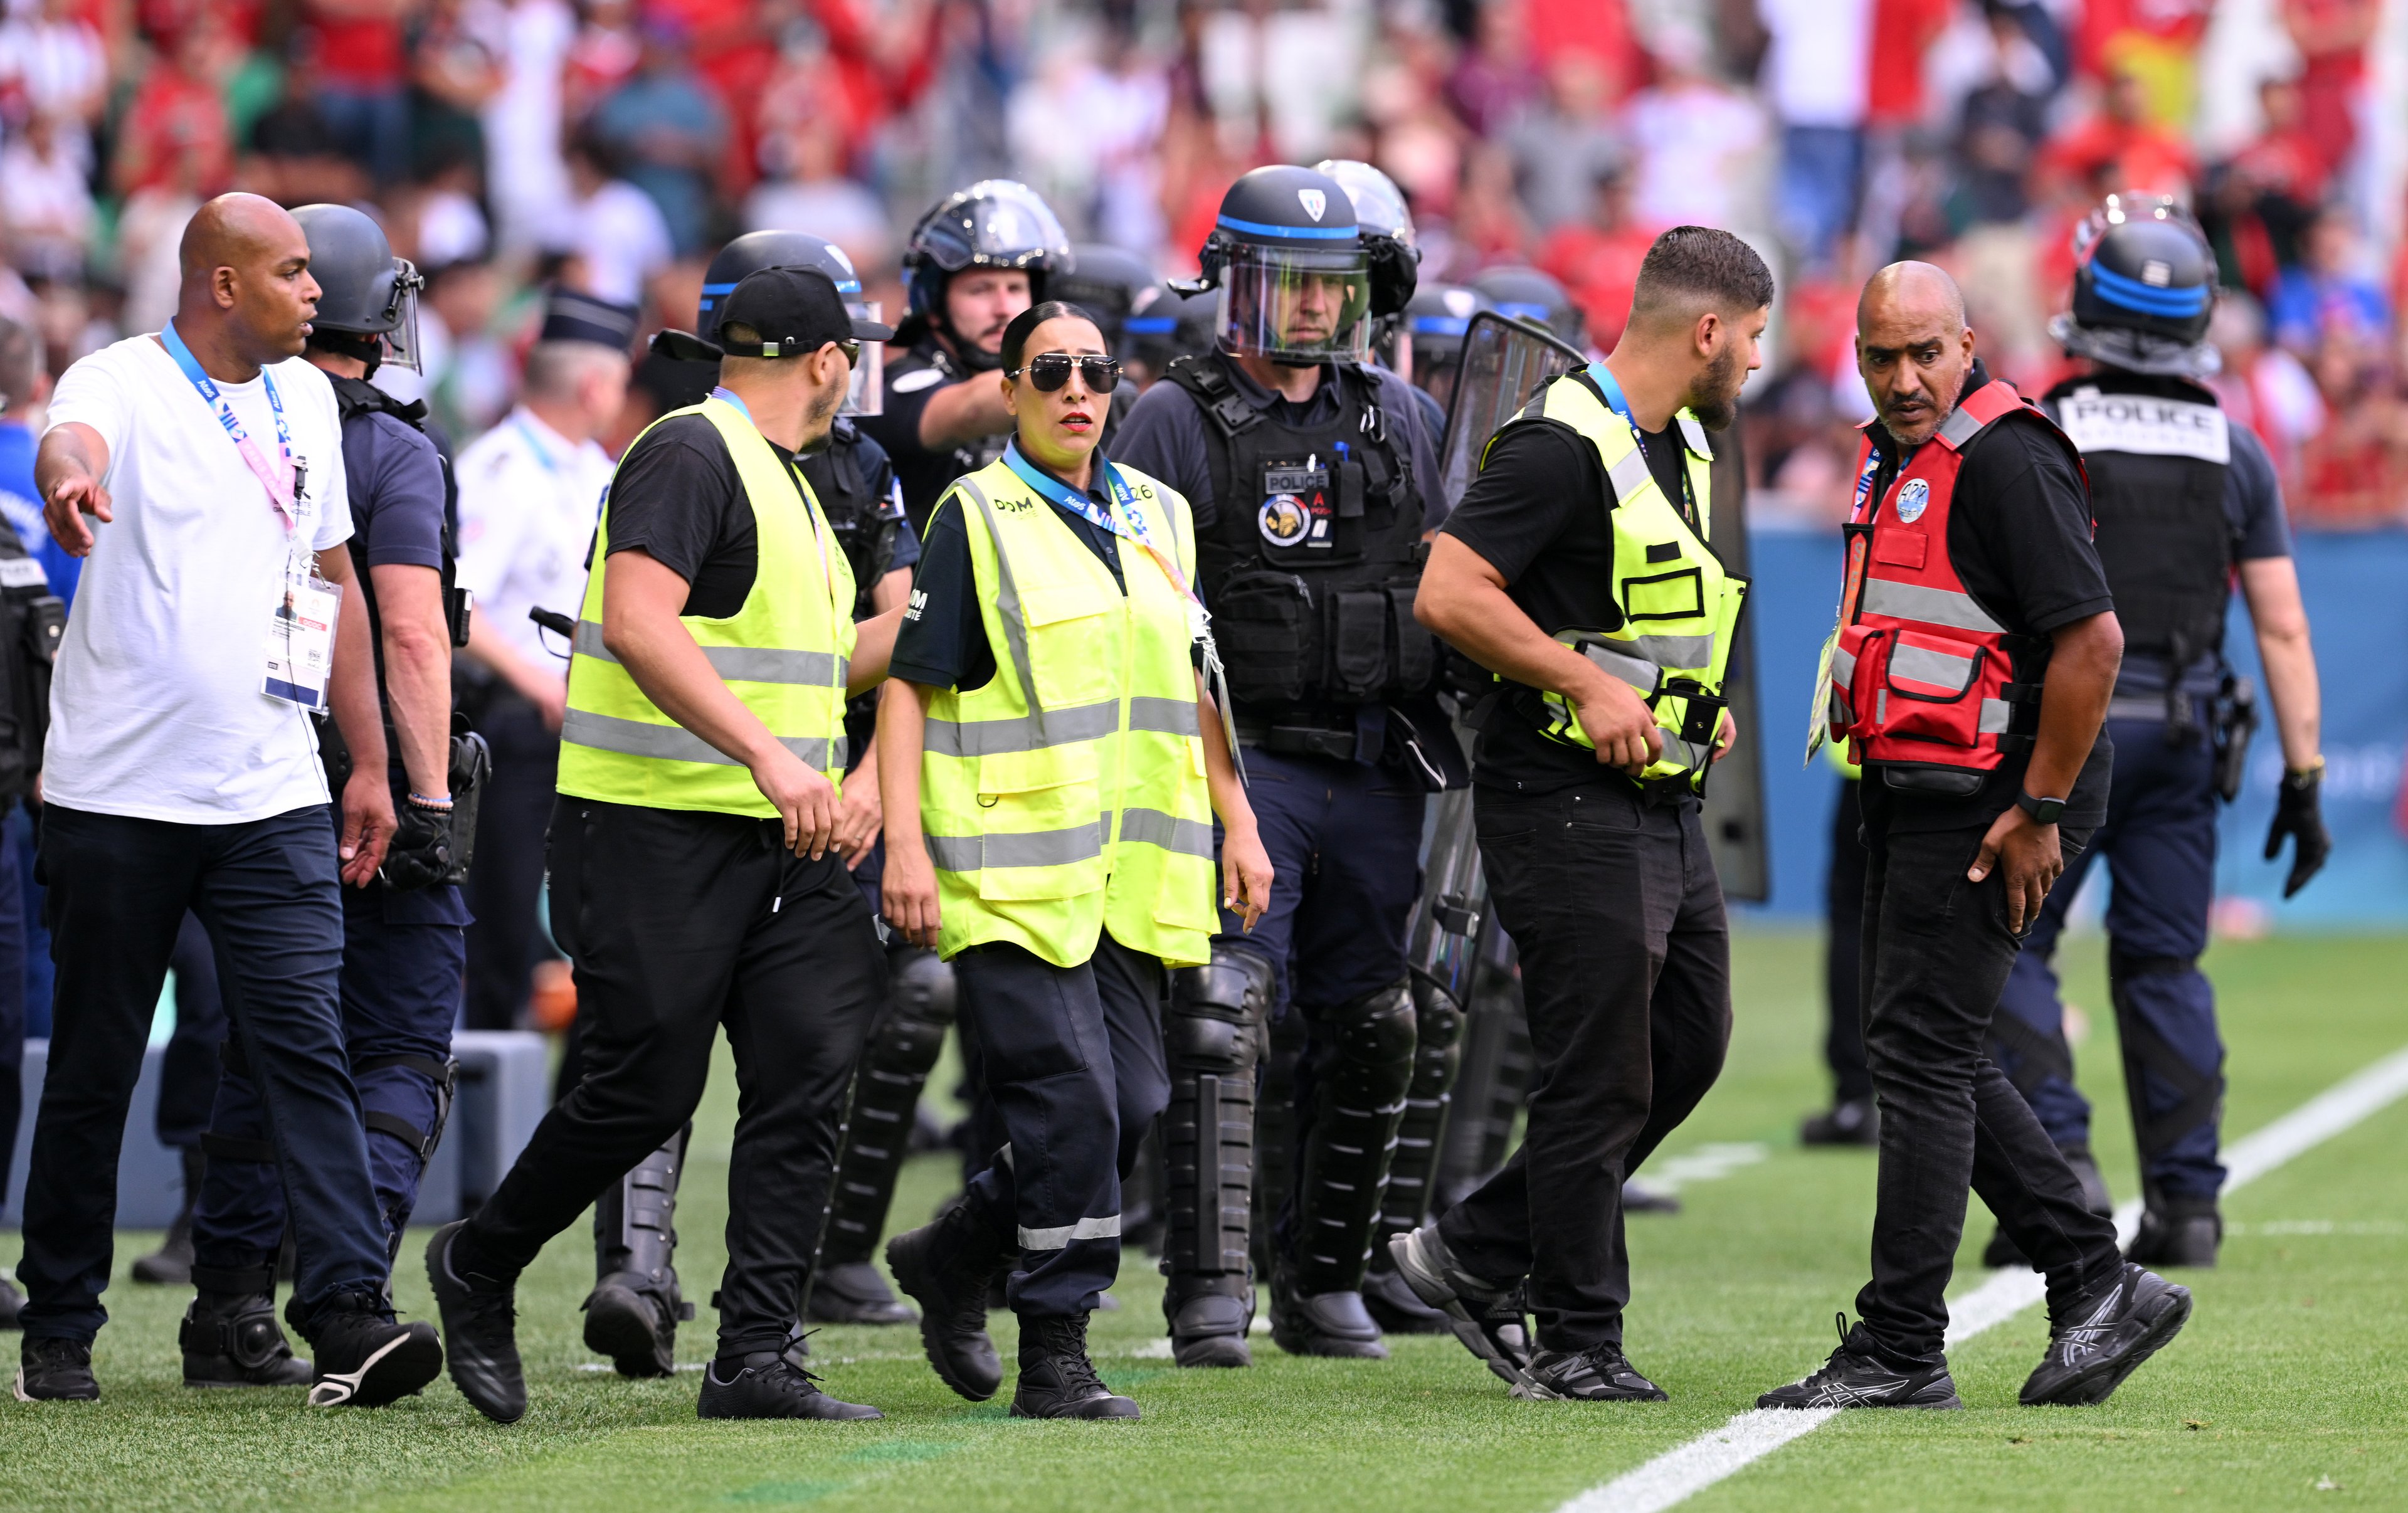 Policiais armados são vistos nas laterais durante a partida do grupo B masculino entre Argentina e Marrocos durante os Jogos Olímpicos de Paris 2024 no Stade Geoffroy-Guichard em 24 de julho de 2024 em Saint-Etienne, França